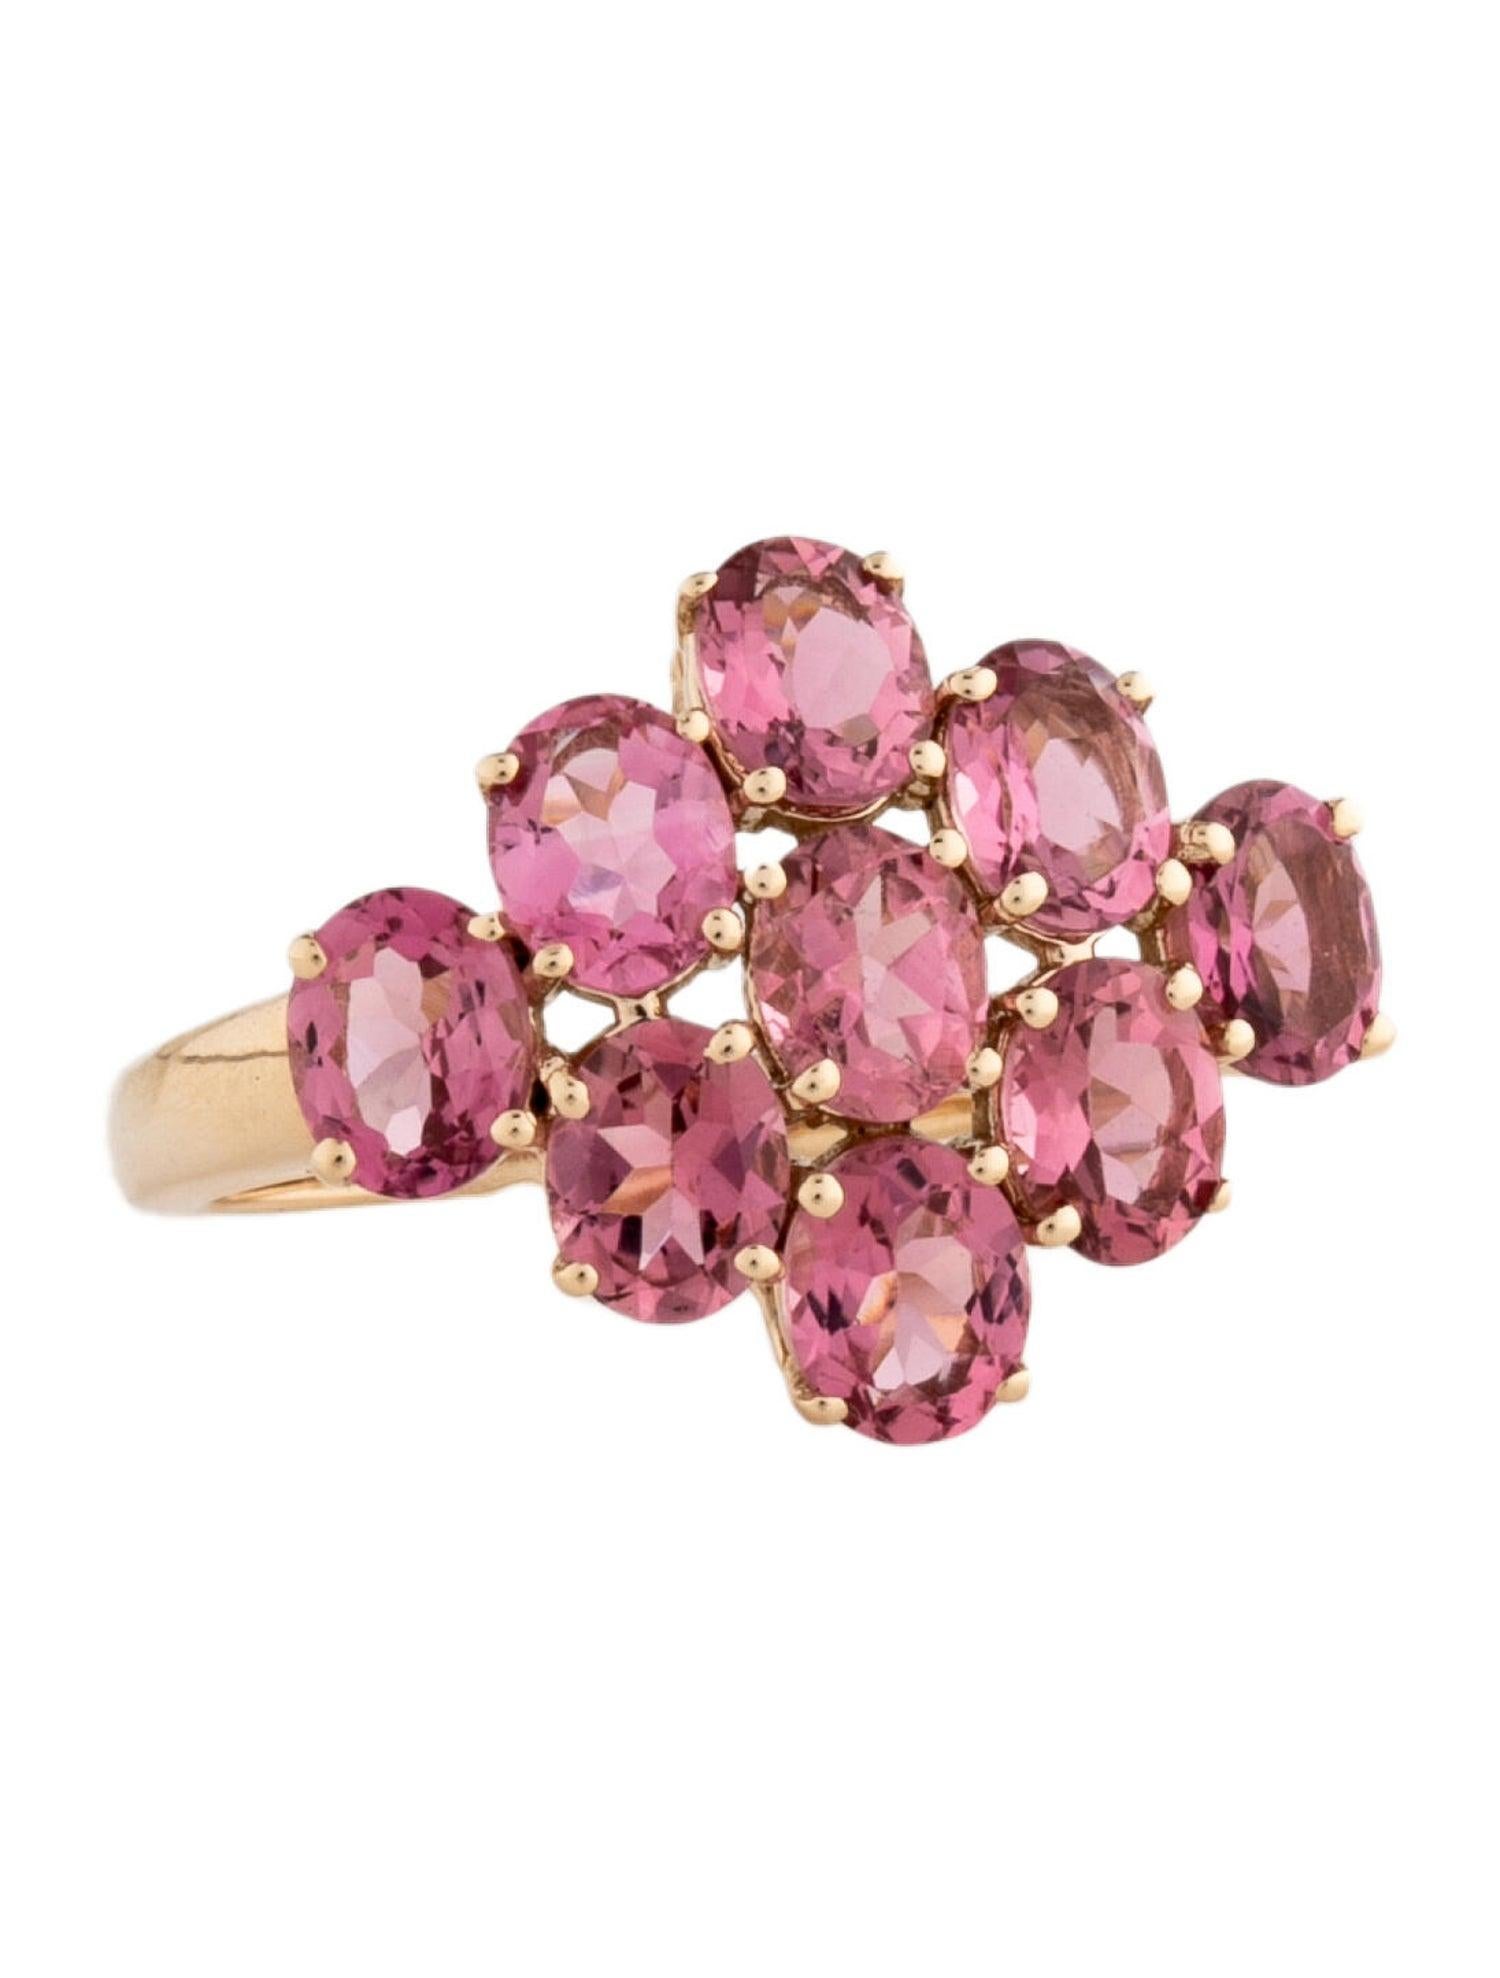 Plongez dans le monde envoûtant de notre Collection Rainbow Gemstone Radiance avec cette exquise bague en tourmaline rose. Inspirée par la tapisserie vibrante d'une forêt luxuriante, chaque pièce de cette collection célèbre le kaléidoscope de